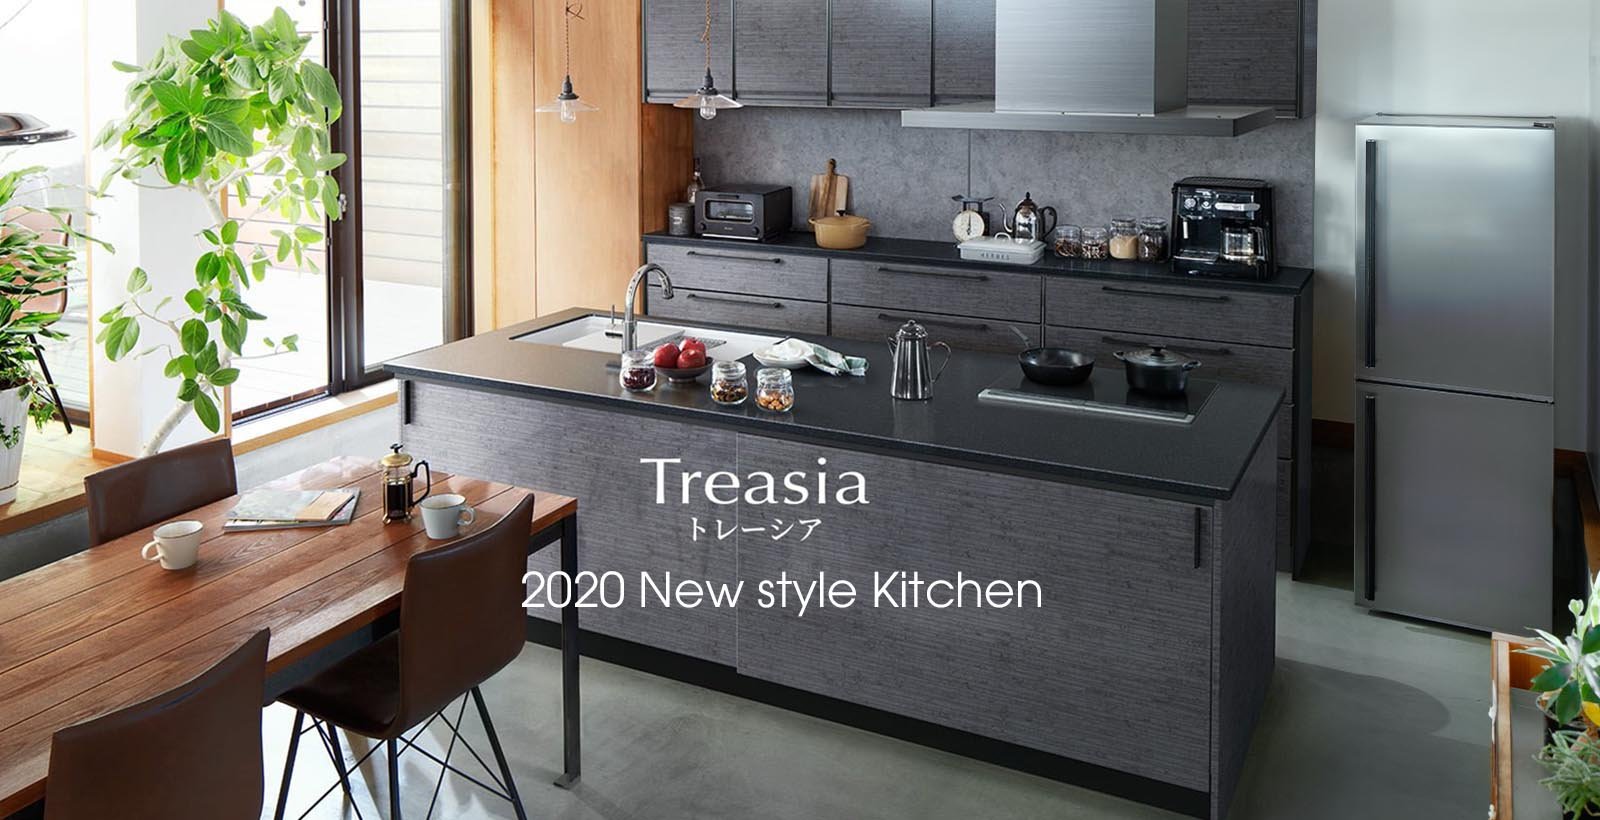 Hệ tủ bếp Treasia - Dòng sản phẩm mới năm 2020 của Takara standard